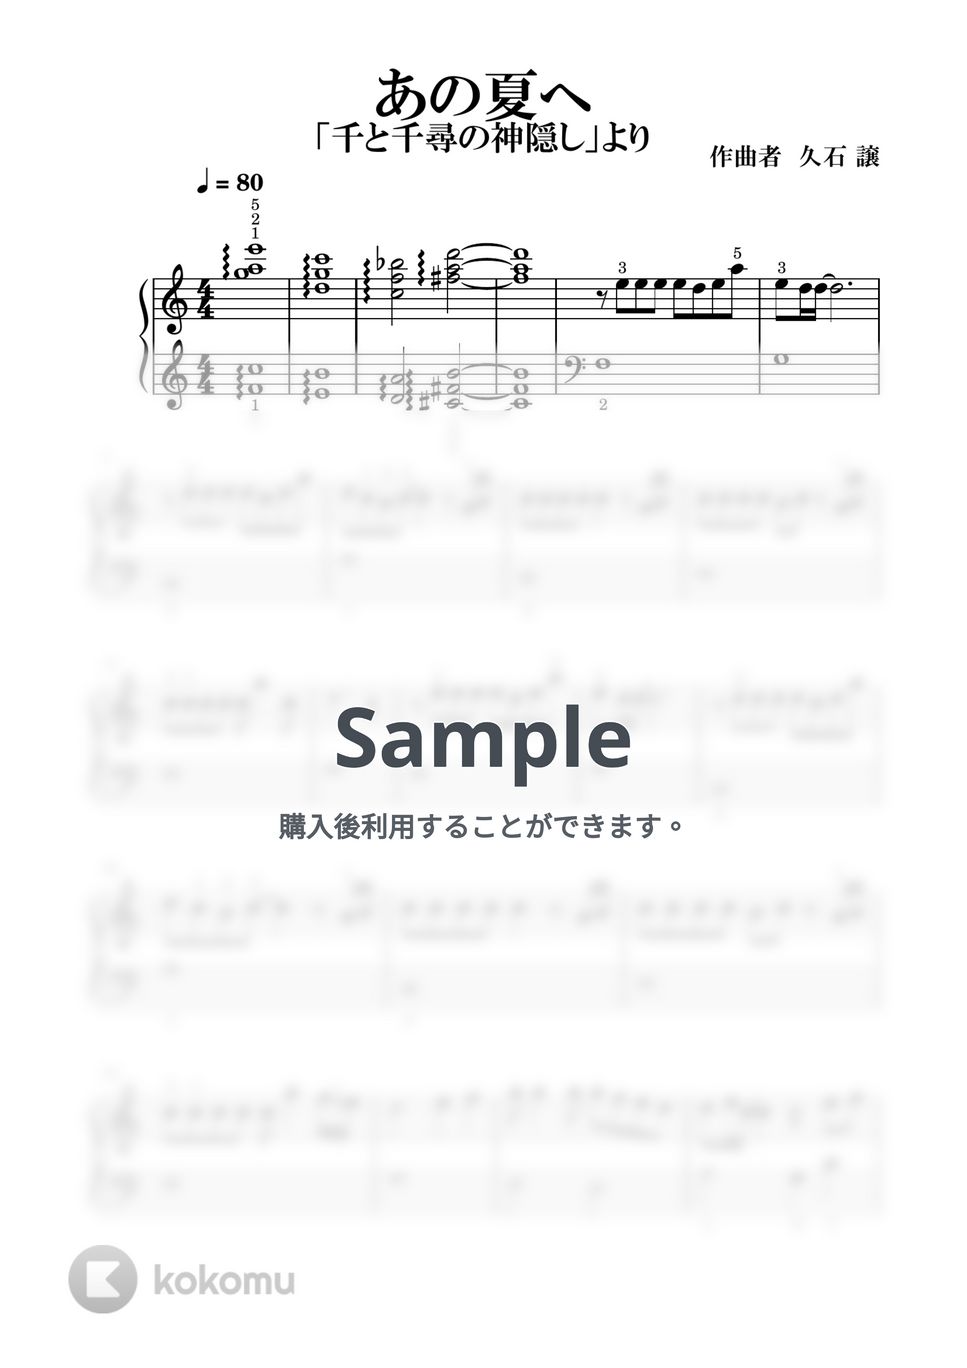 久石譲 - あの夏へ (～もっと簡単に) by すいすいかんたんピアノ